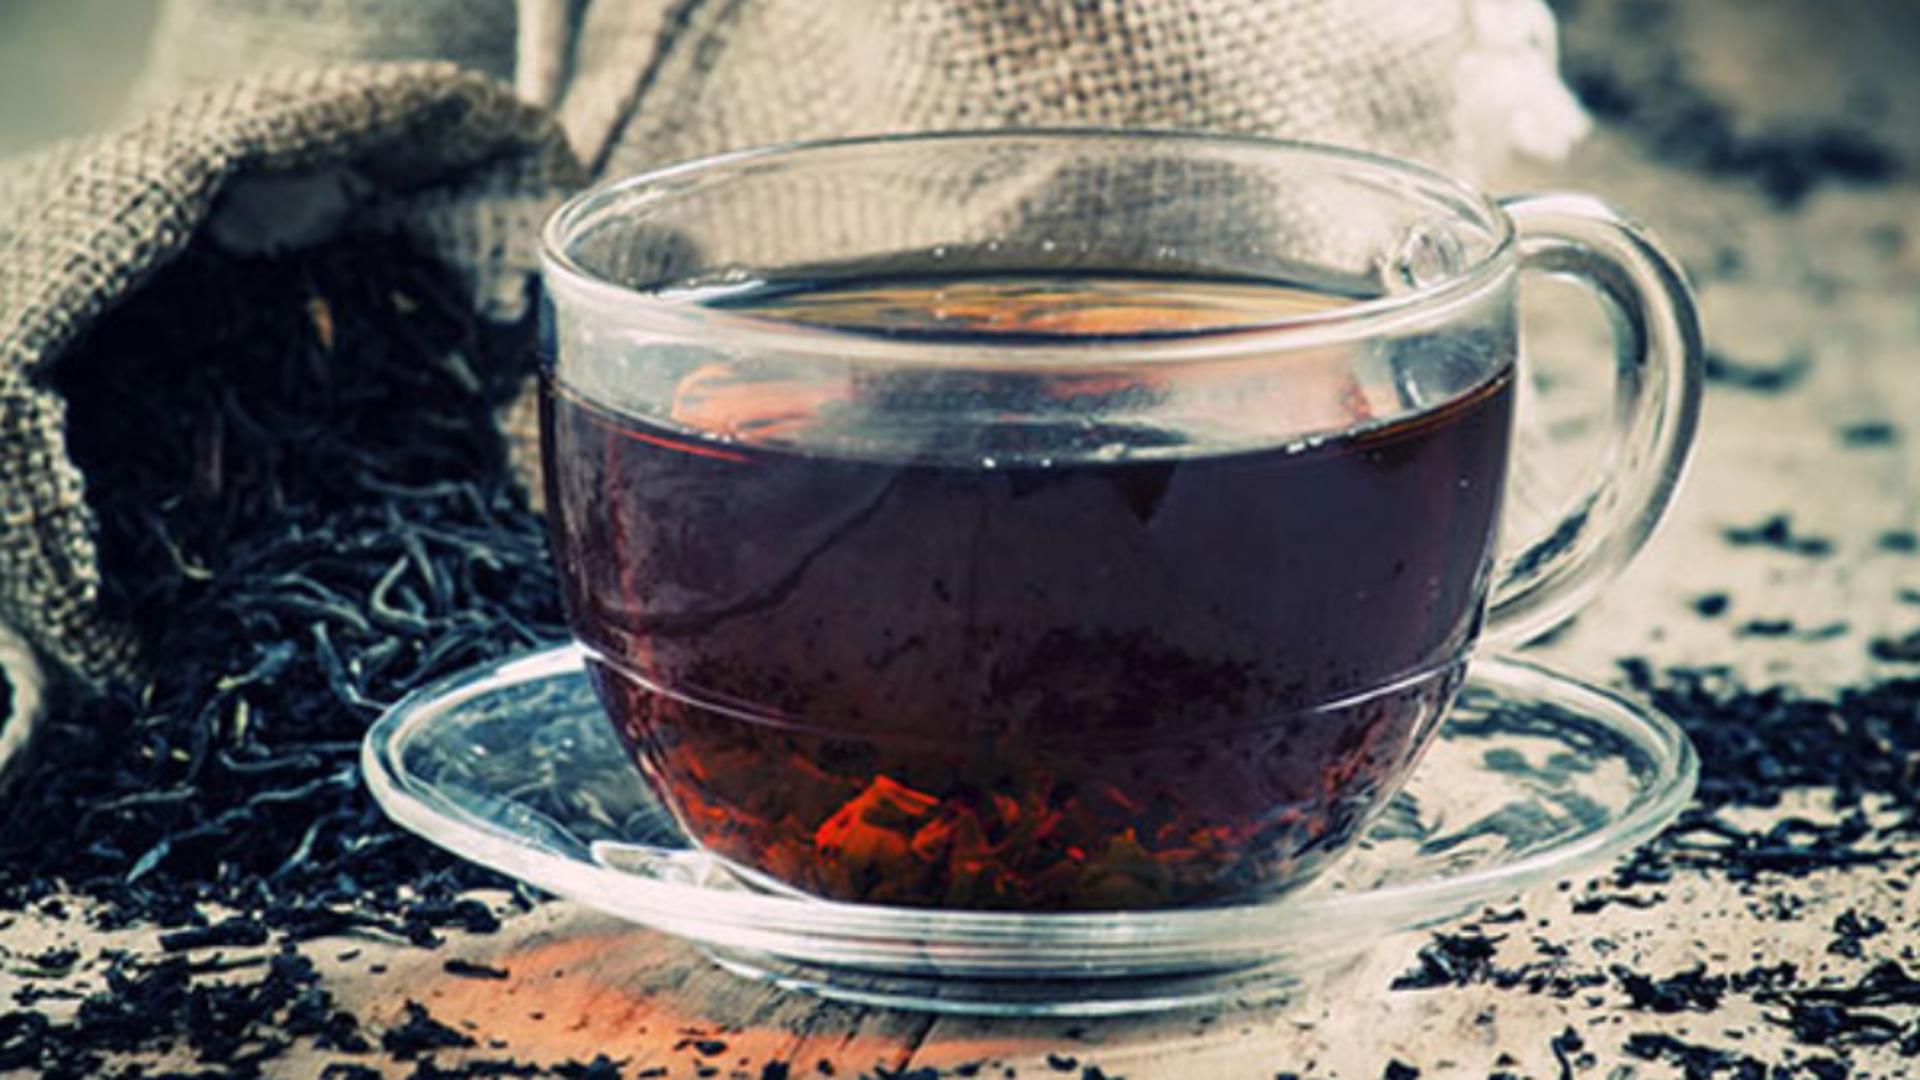 RISCUL de mortalitate poate fi redus cu 2 căni de ceai negru - Ce beneficii mai are ceaiul negru